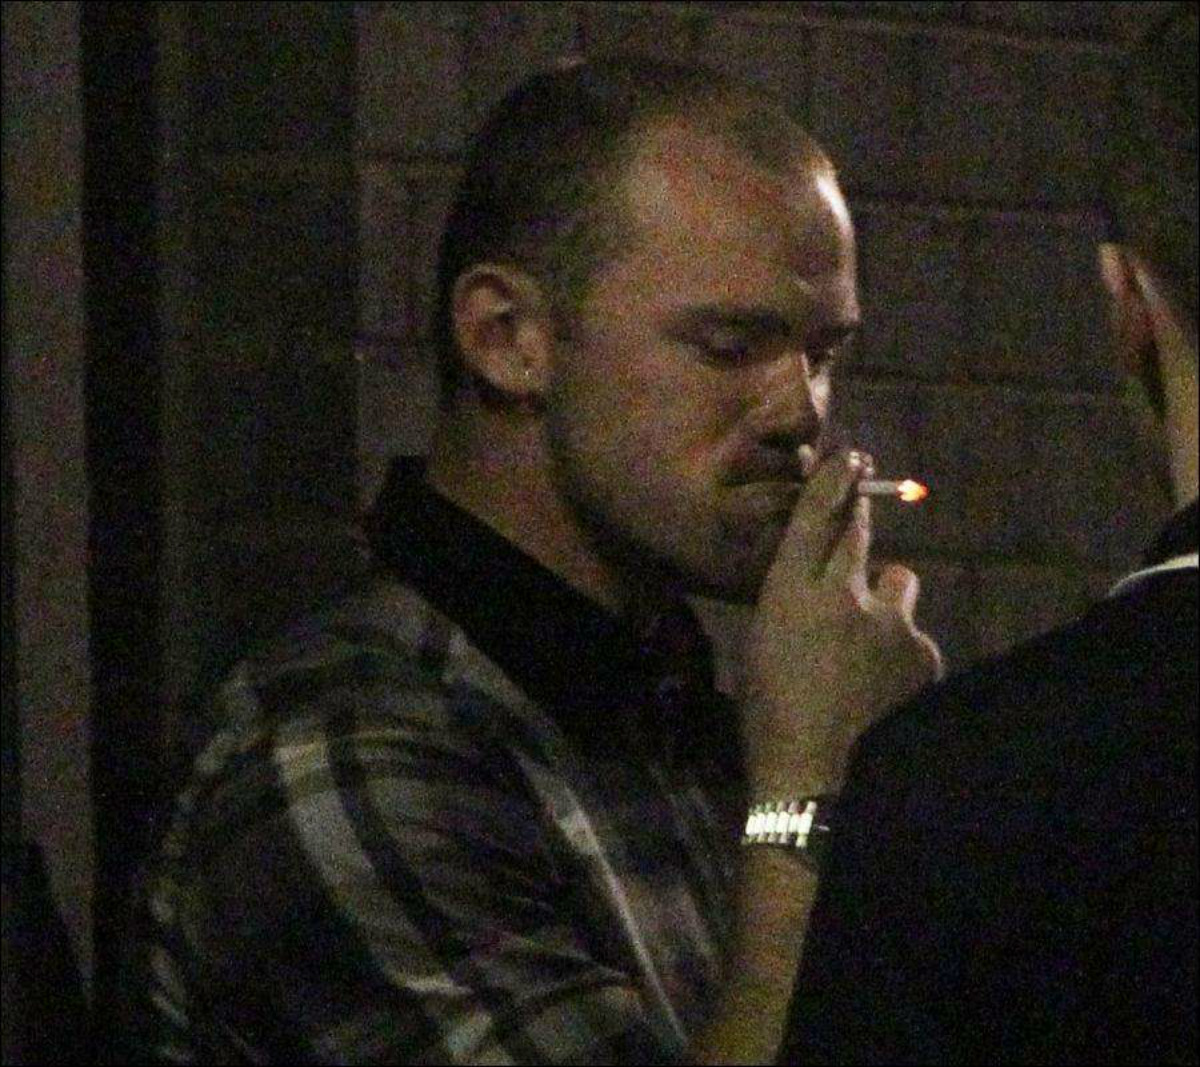 Rooney já foi capa de jornais por conta do cigarro. Foto: Reprodução